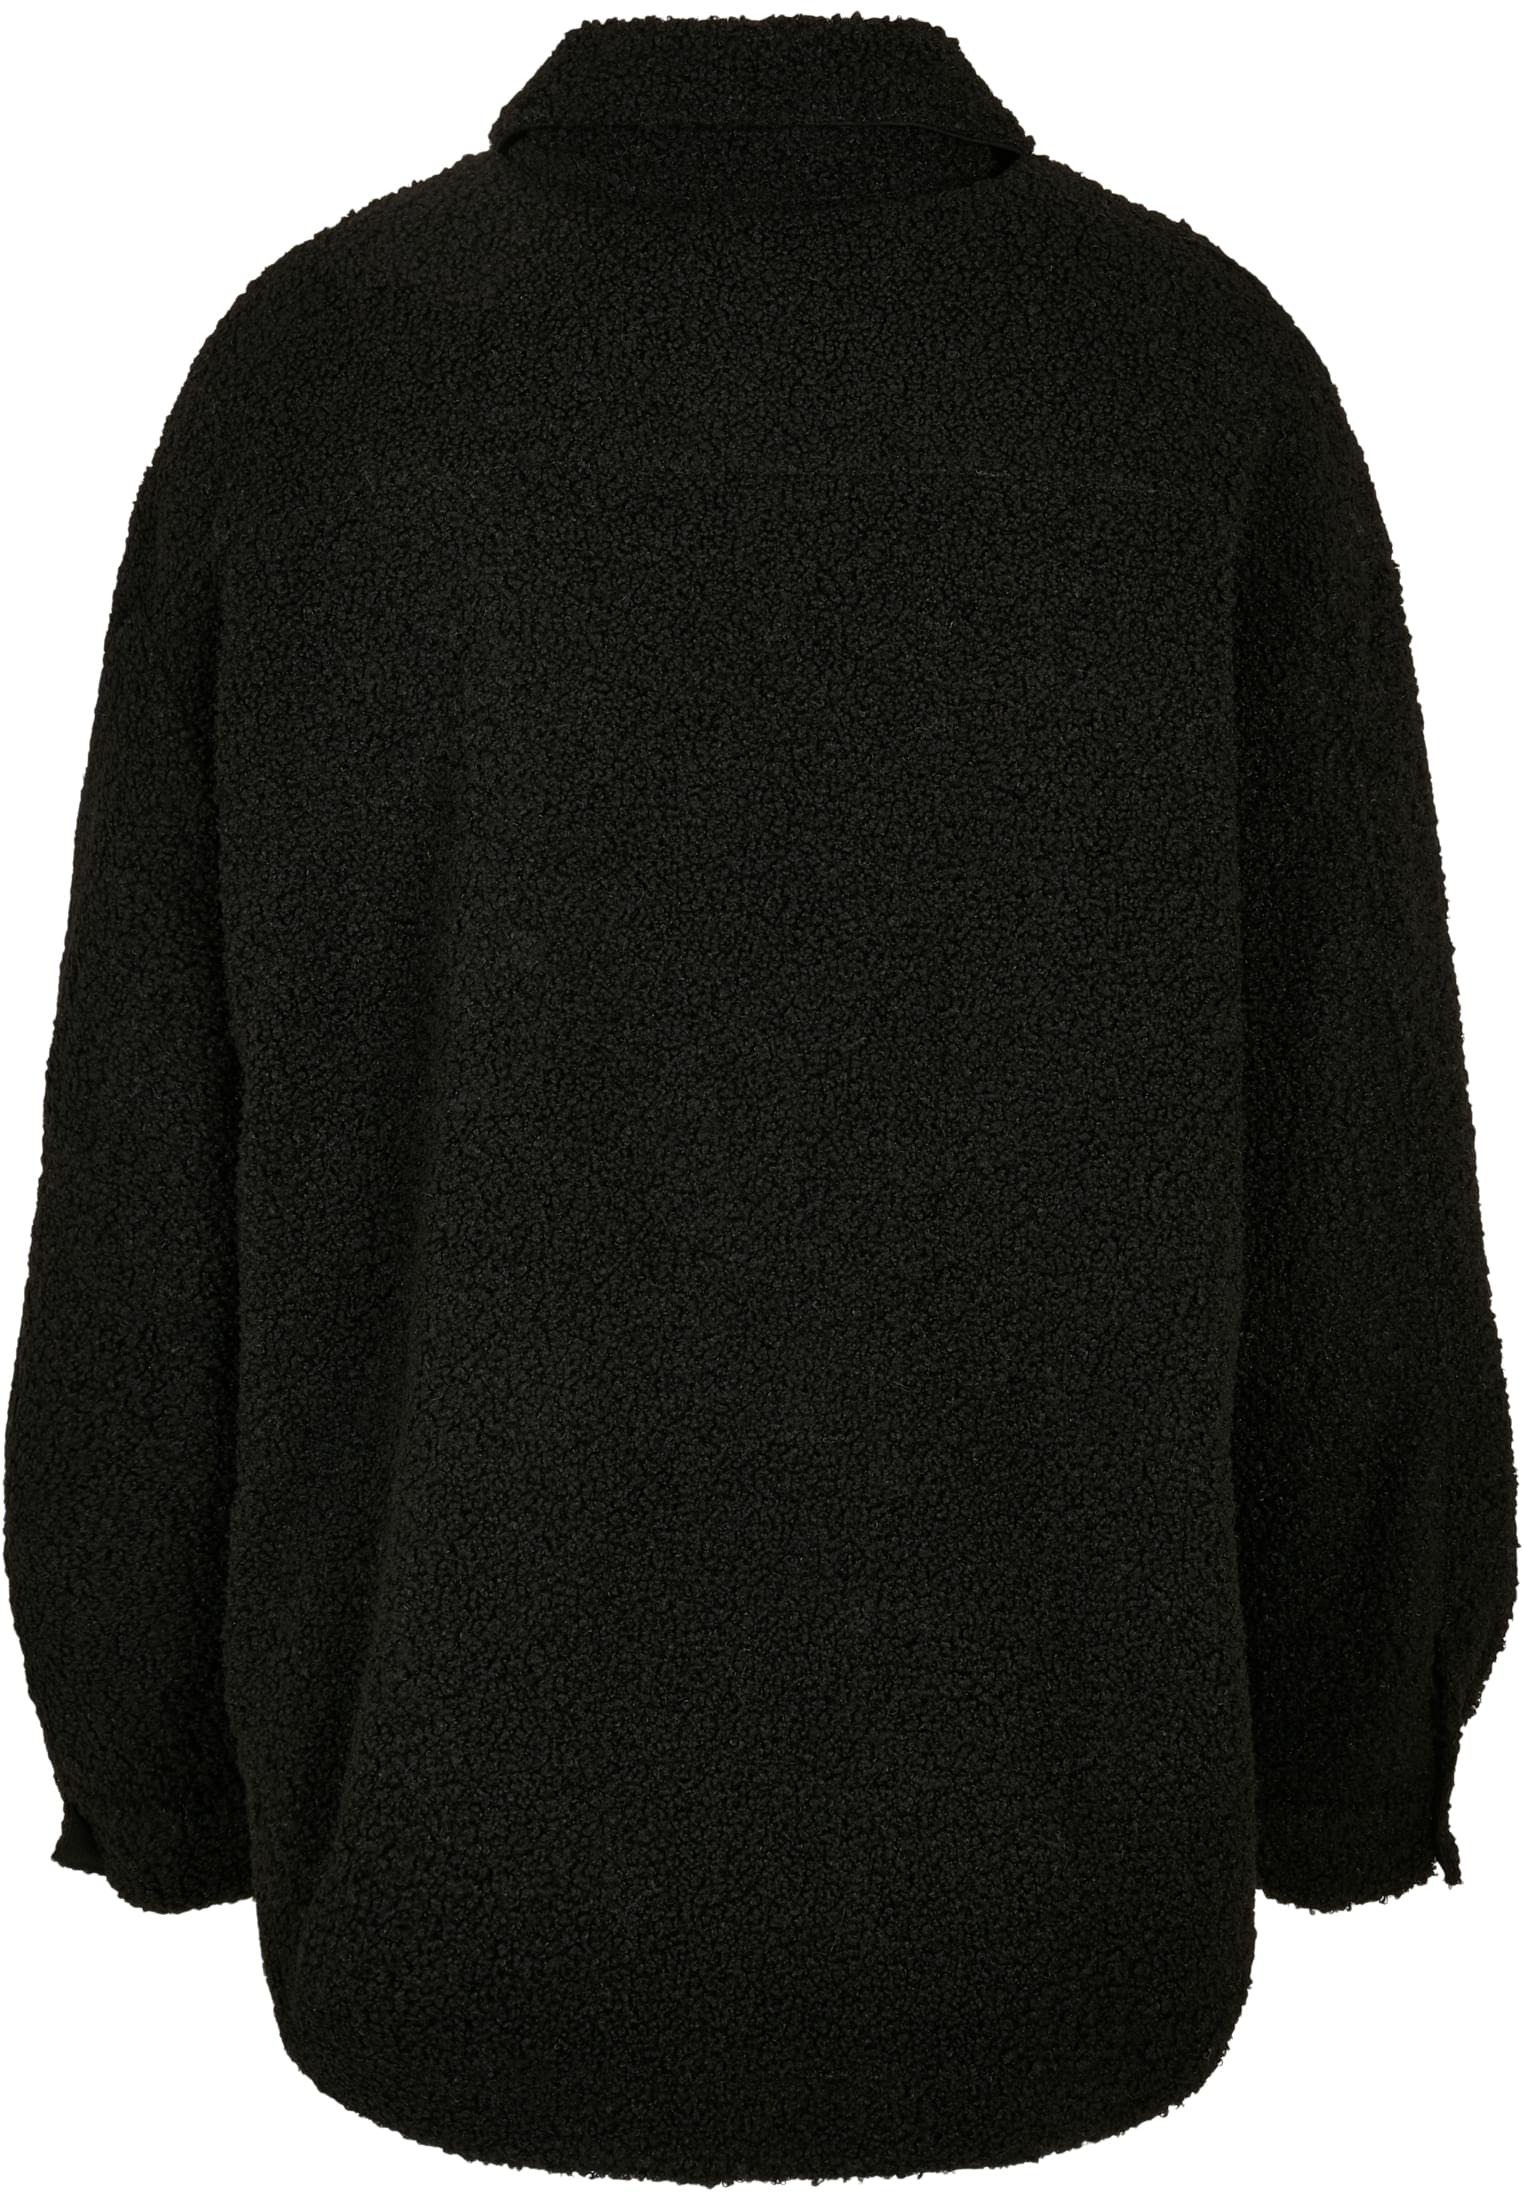 Hemden Ladies Sherpa Overshirt in Farbe black